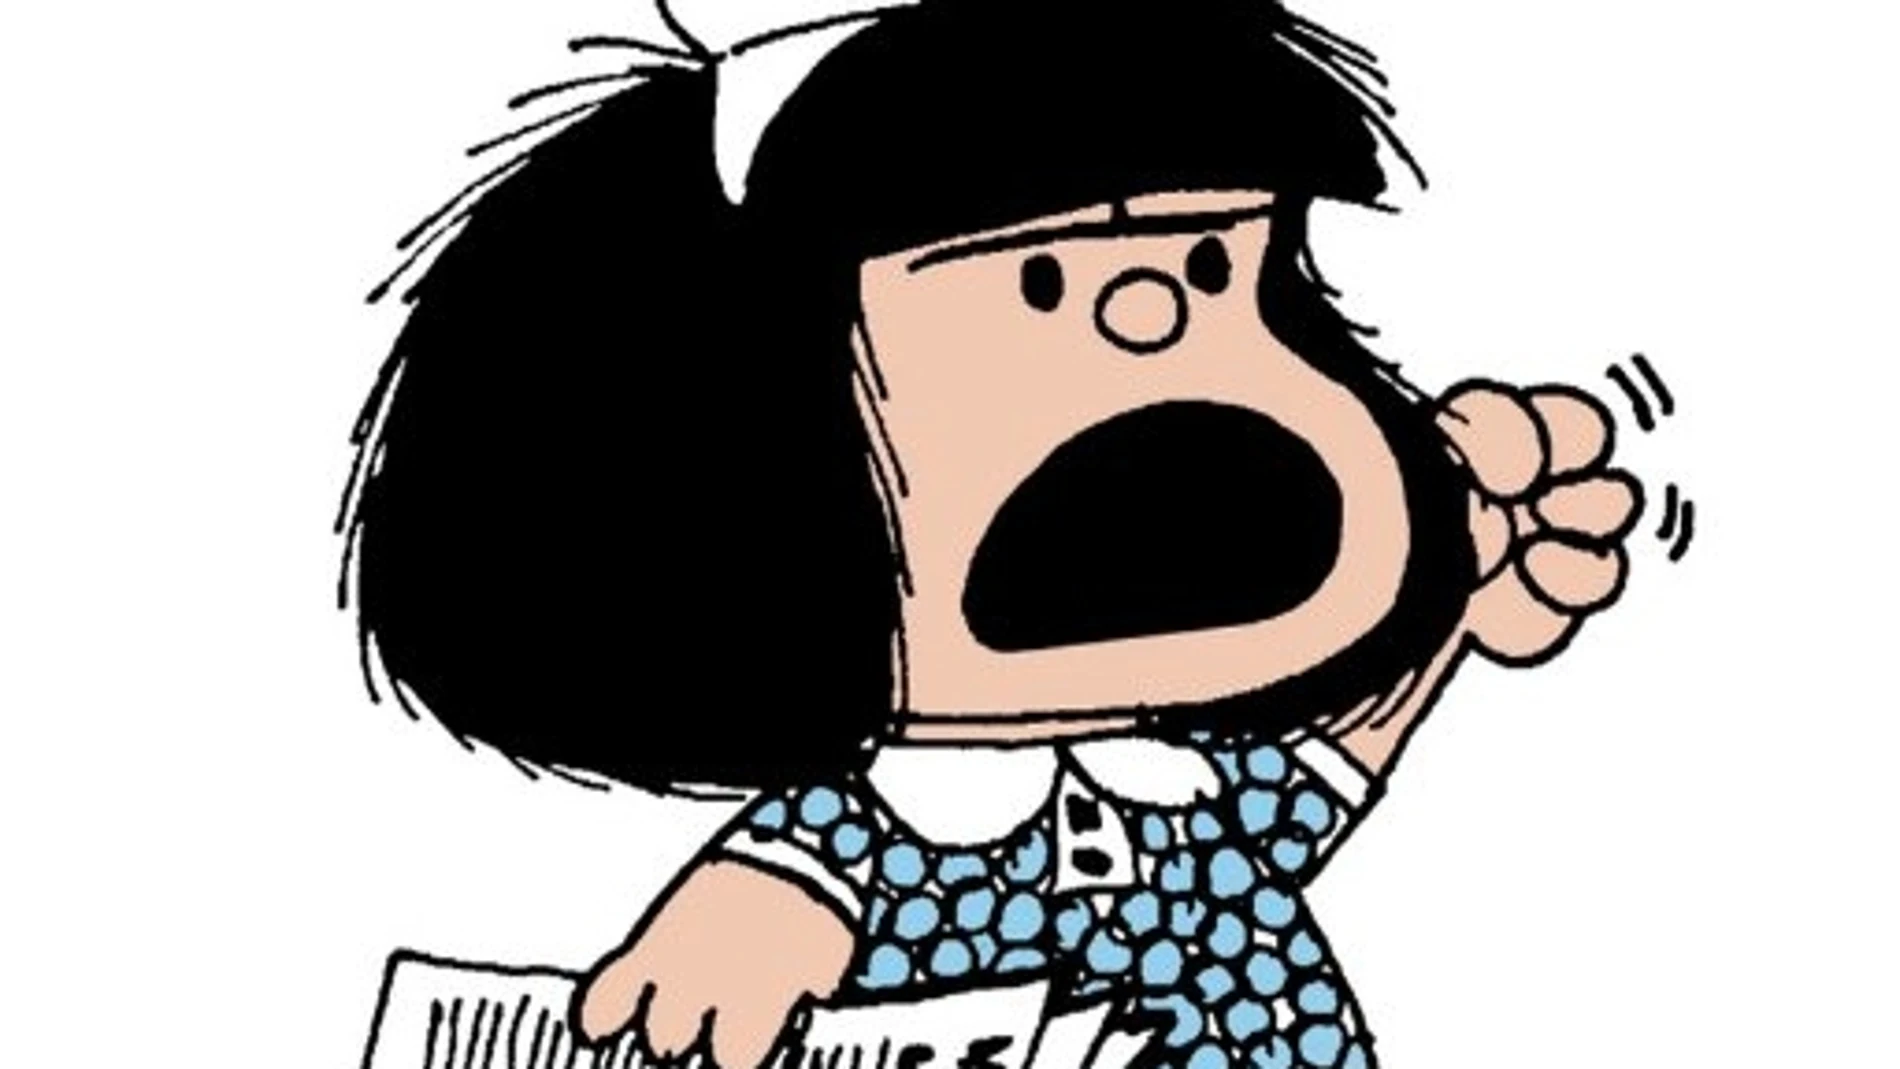 El nombre de "Mafalda" está inspirado en el bebé que aparece en la novela "Dar la cara", de David Viñas